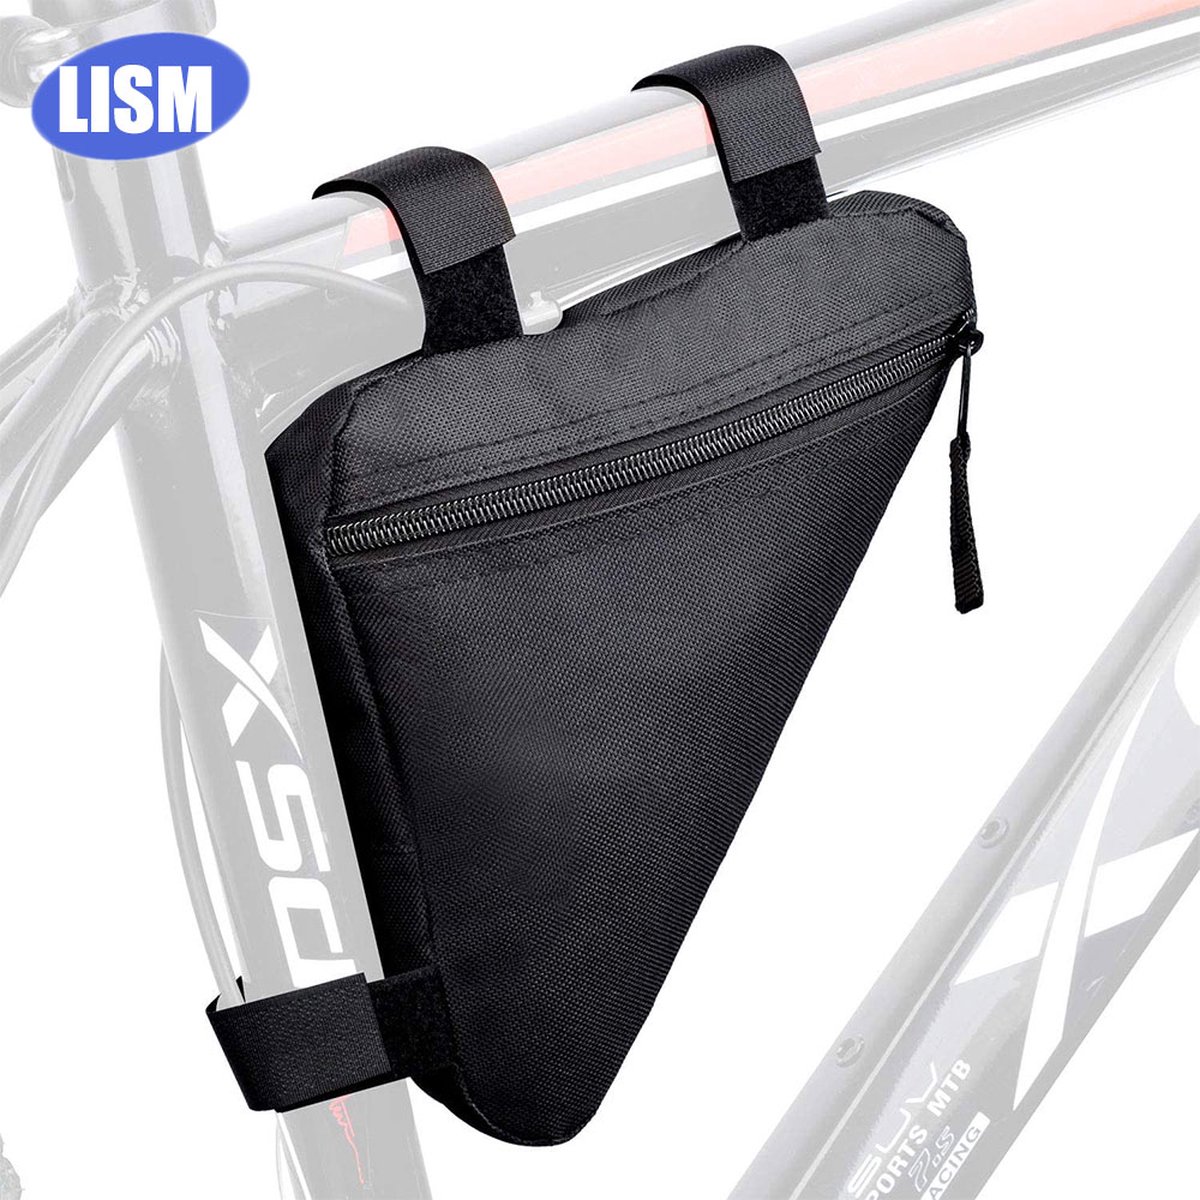 fietstasje voor op de racefiets/mtb (zwart)